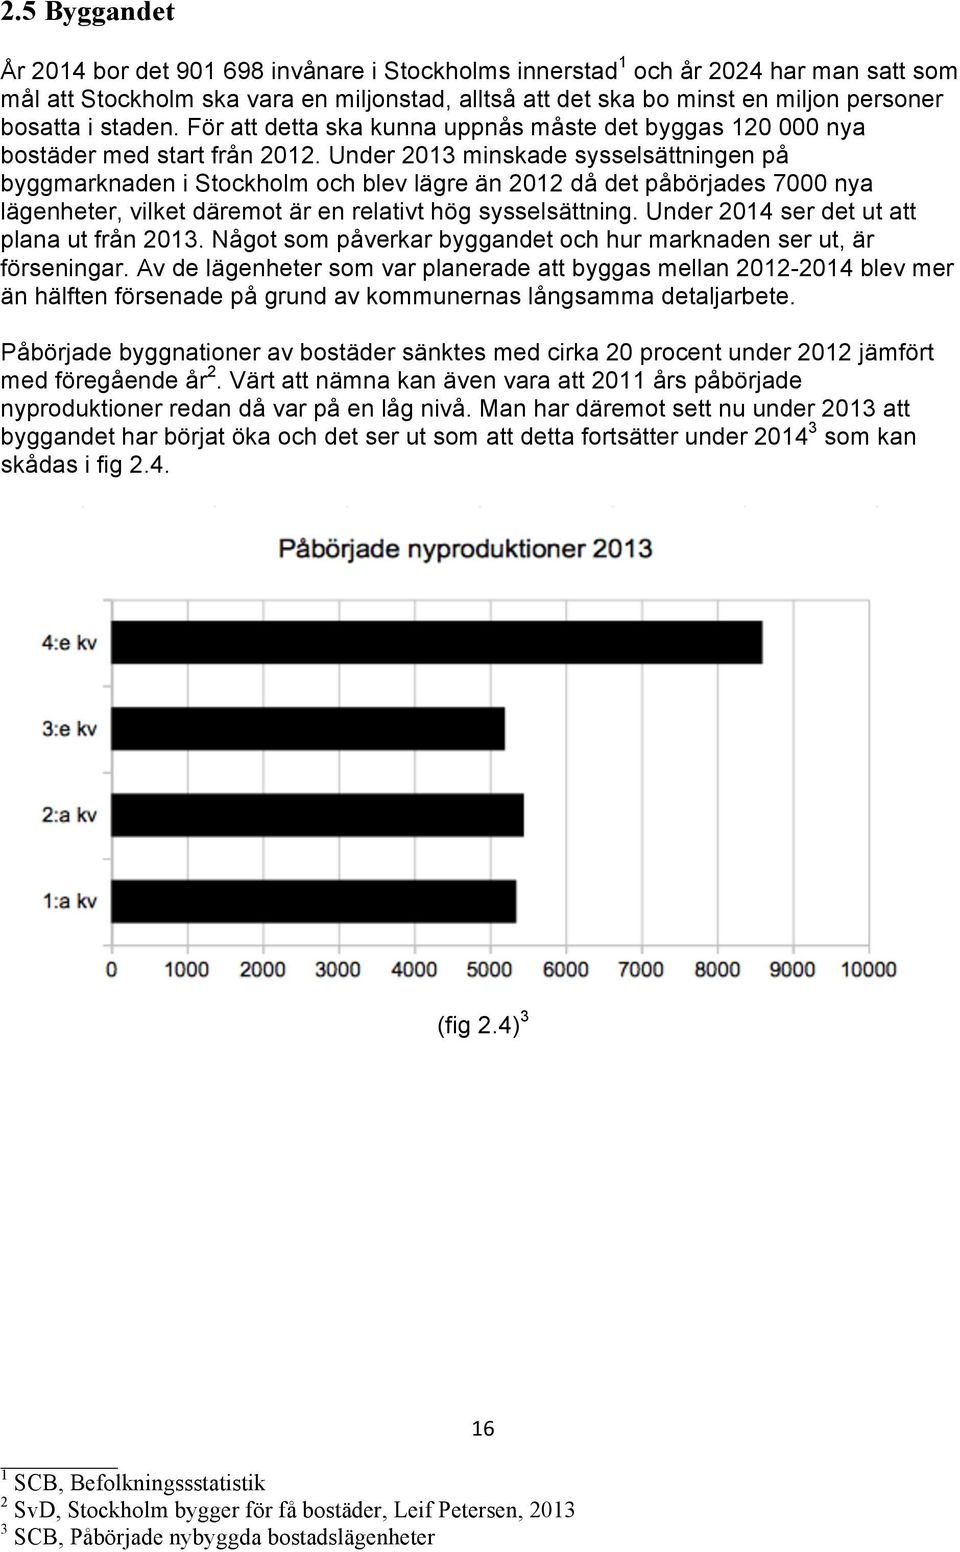 Under 2013 minskade sysselsättningen på byggmarknaden i Stockholm och blev lägre än 2012 då det påbörjades 7000 nya lägenheter, vilket däremot är en relativt hög sysselsättning.